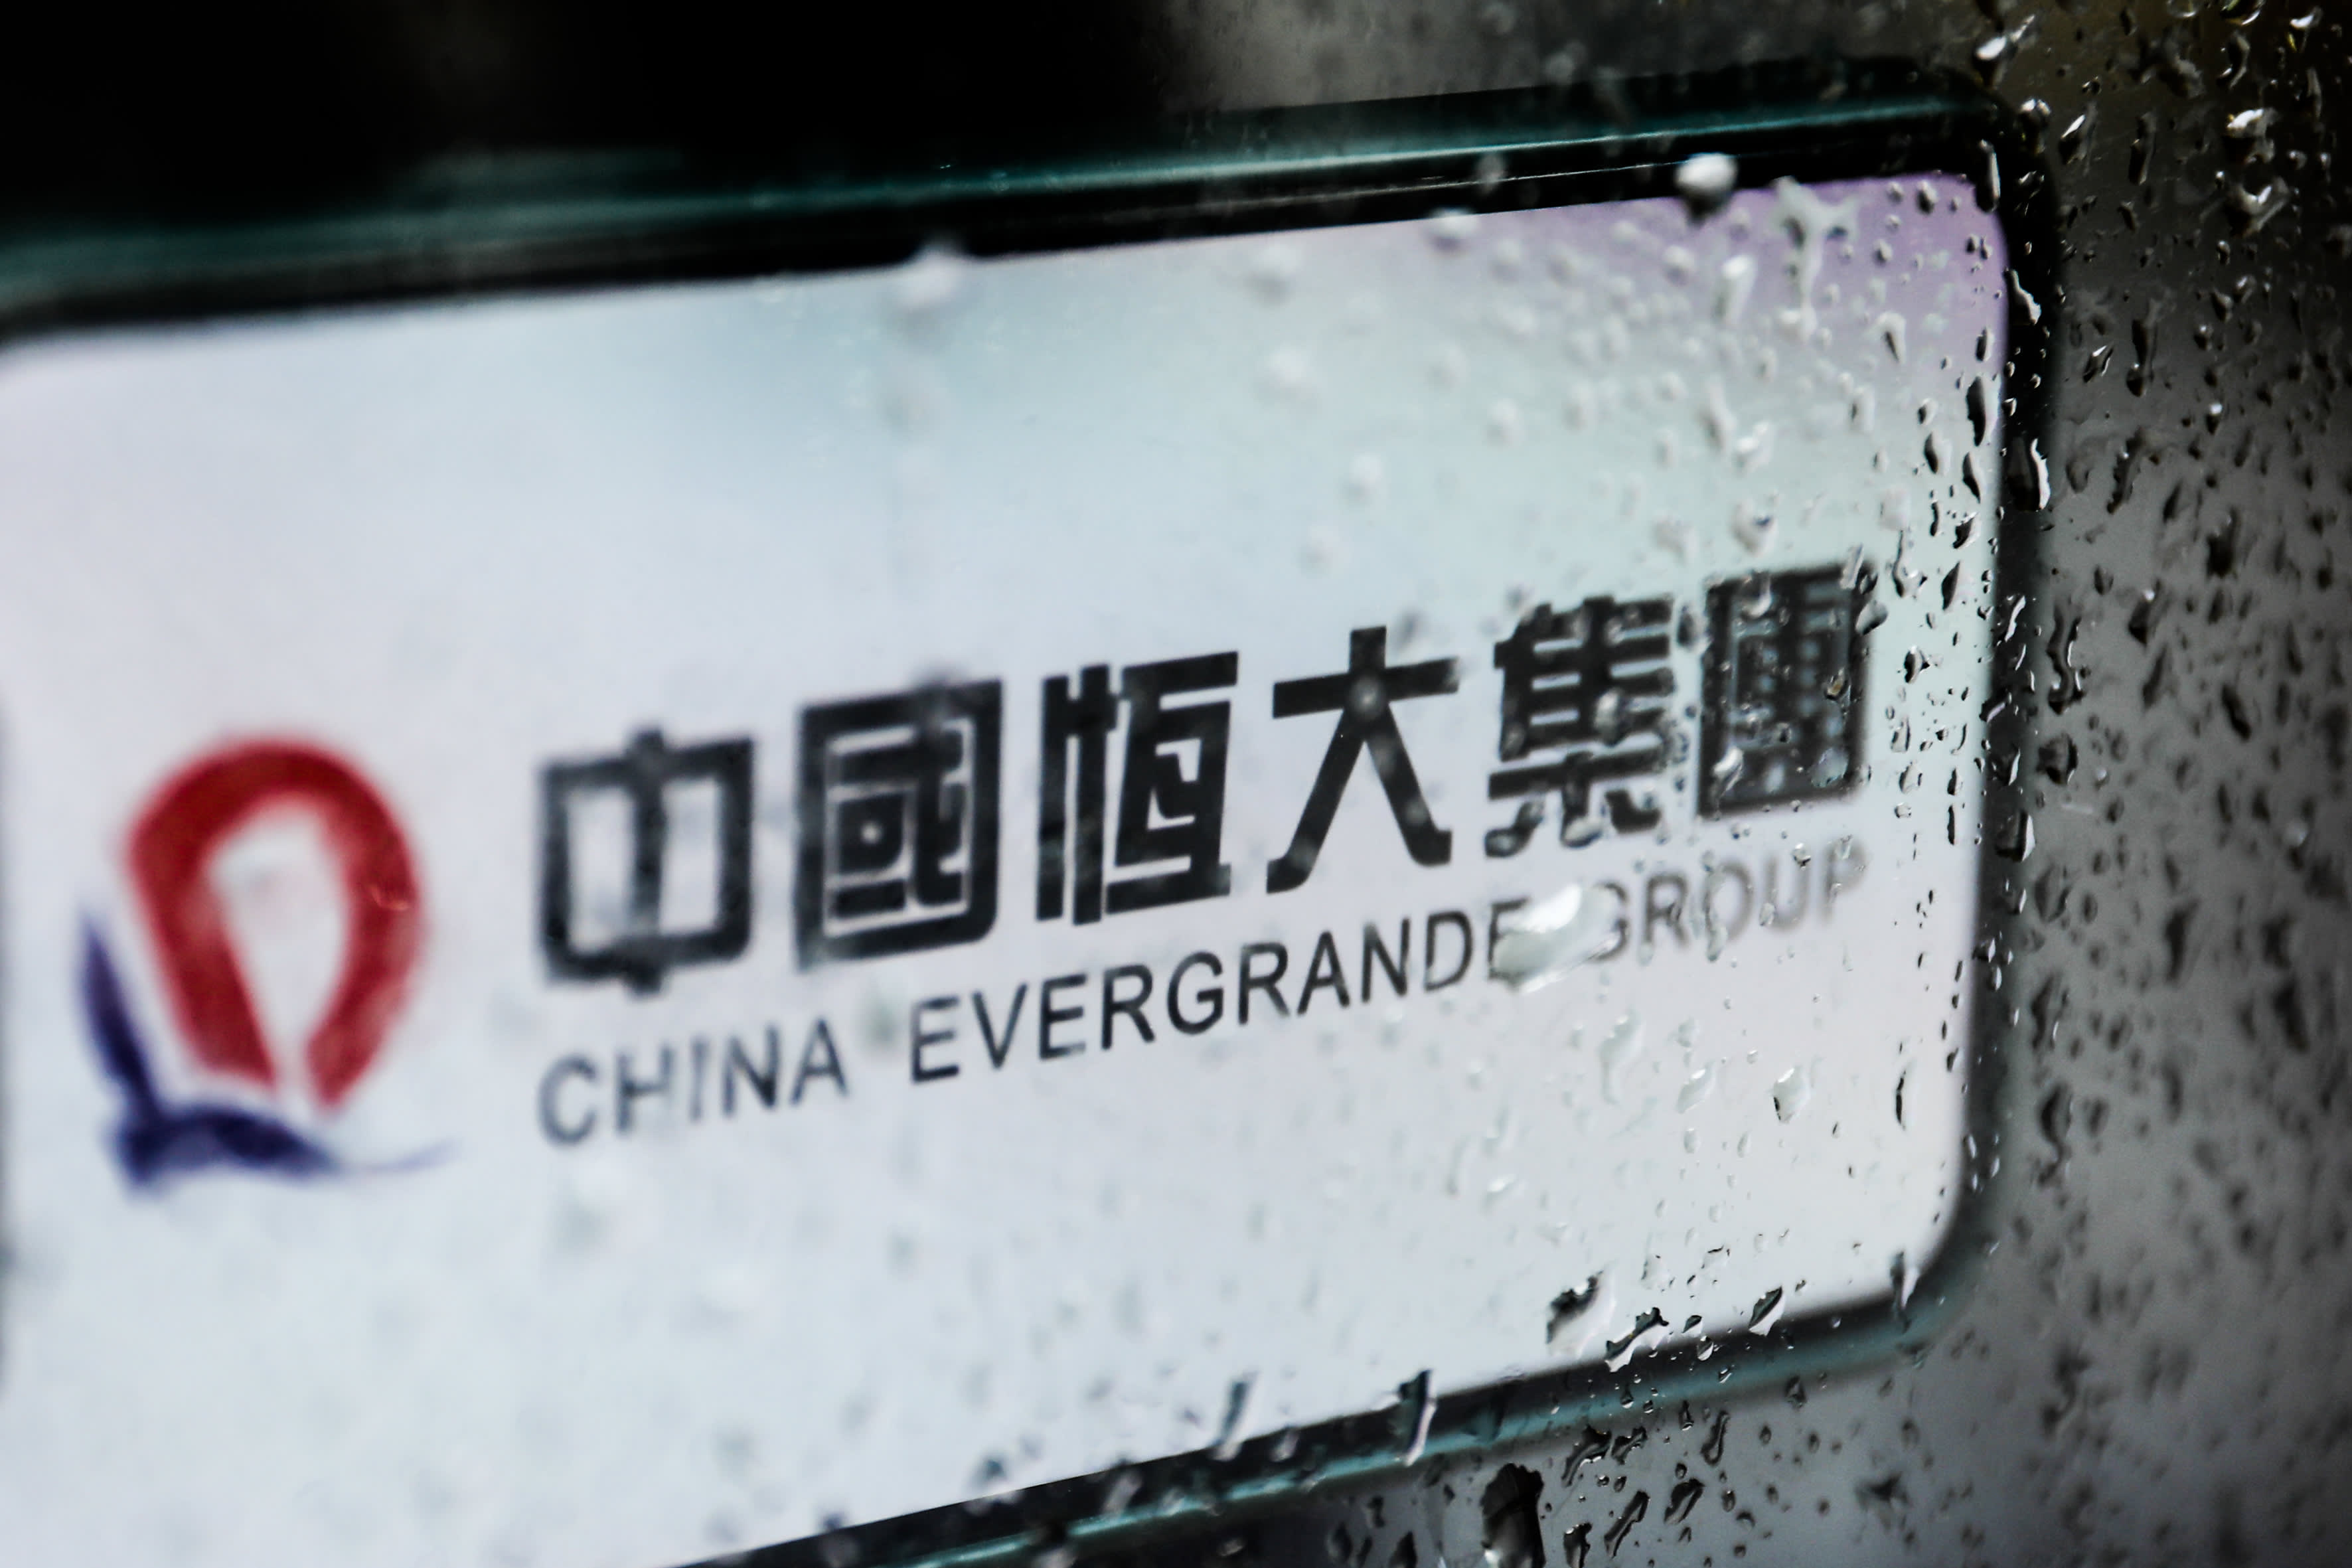 La crise de liquidation d'Evergrande ne sera pas un moment pour Lehman : le livre beige de la Chine